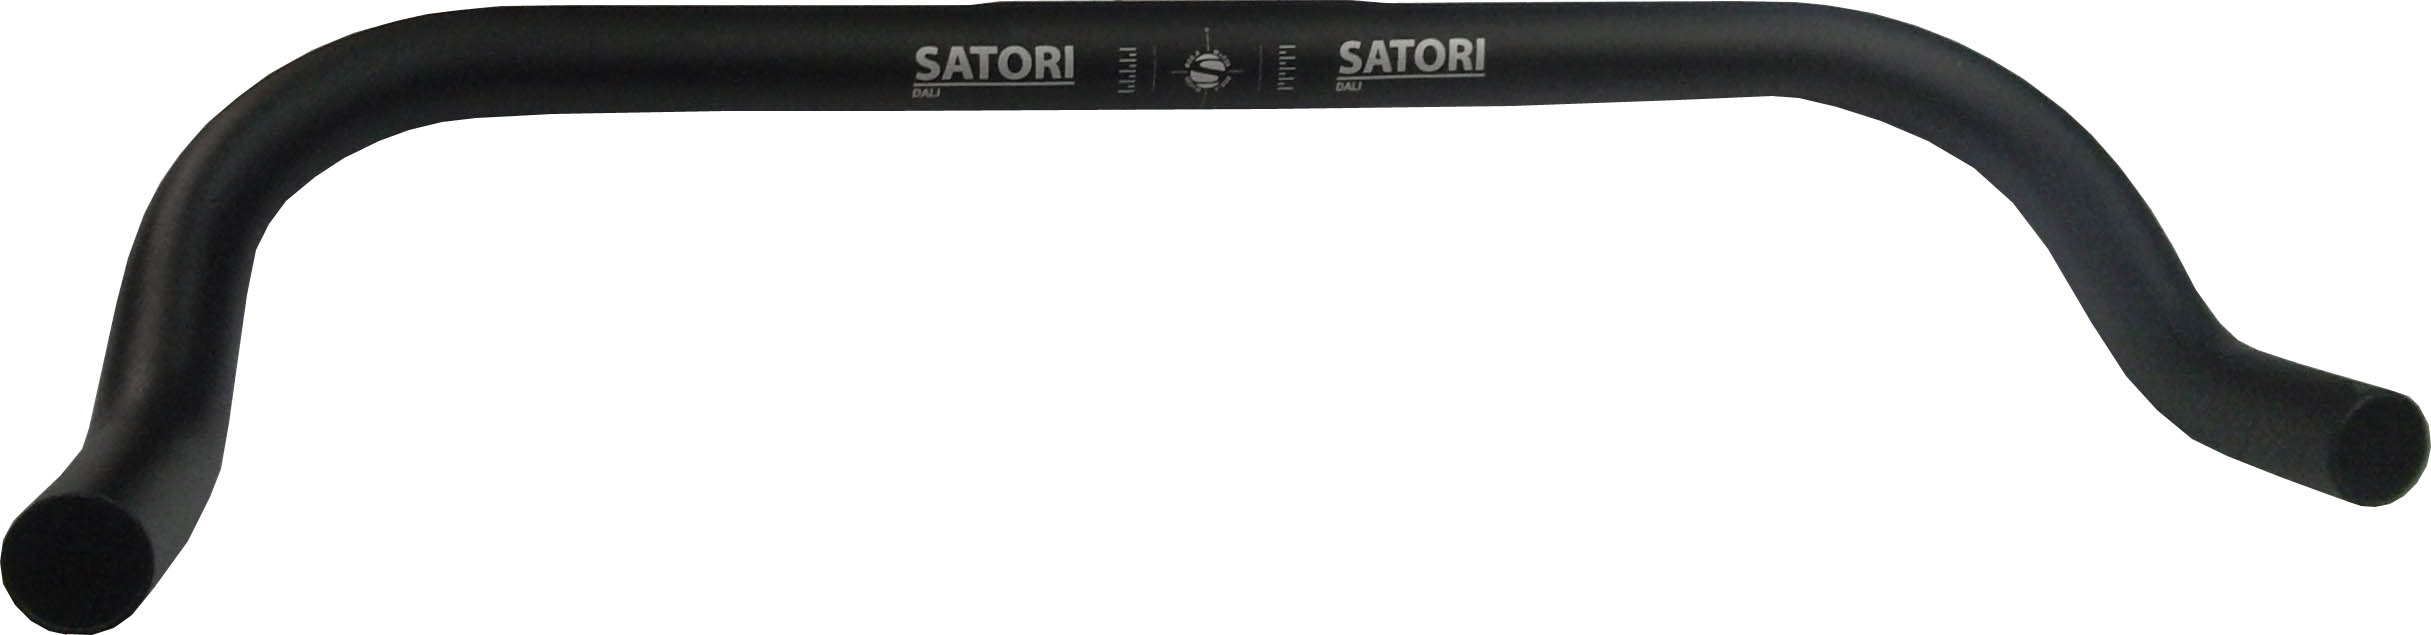 Руль Ø25.4x420мм, чёрный, лого Satori.